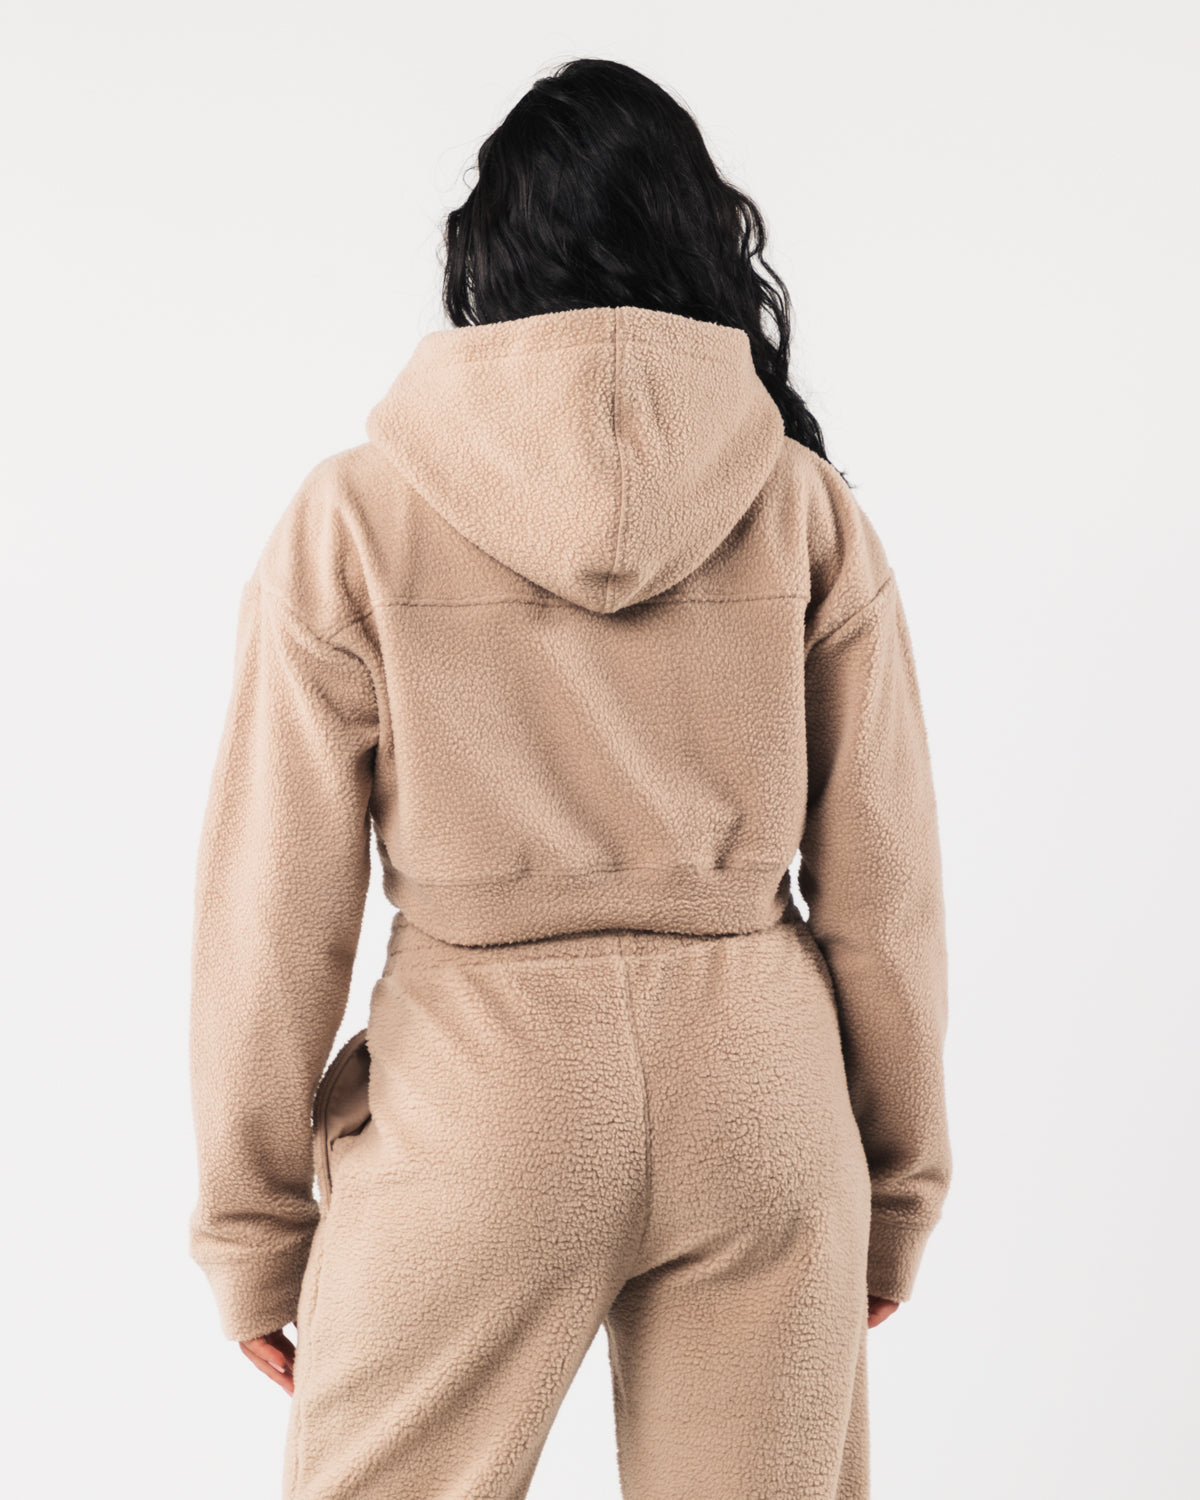 EFAN Women Cropped Hoodies Fleece … curated on LTK